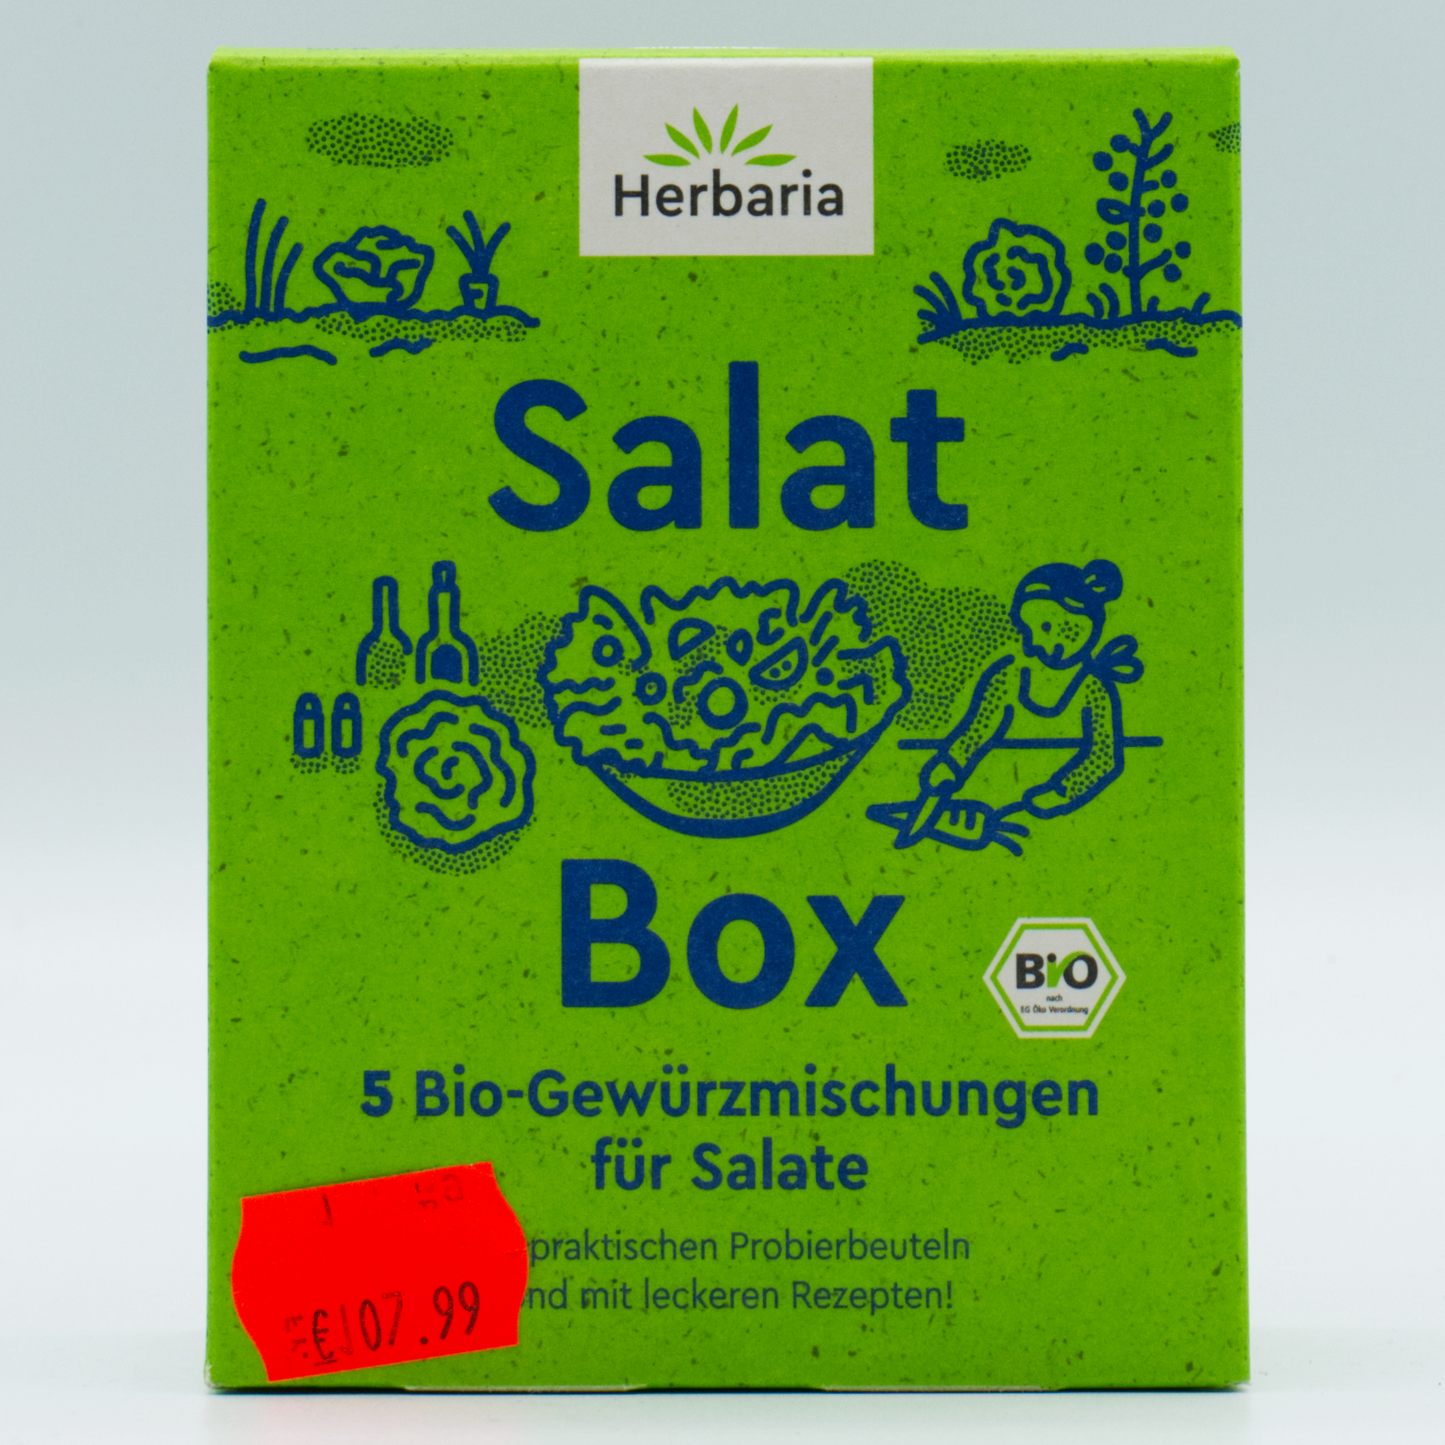 Salat Box Herbaria 5 Bio-Gewürzmischungen für Salate 5x 8g